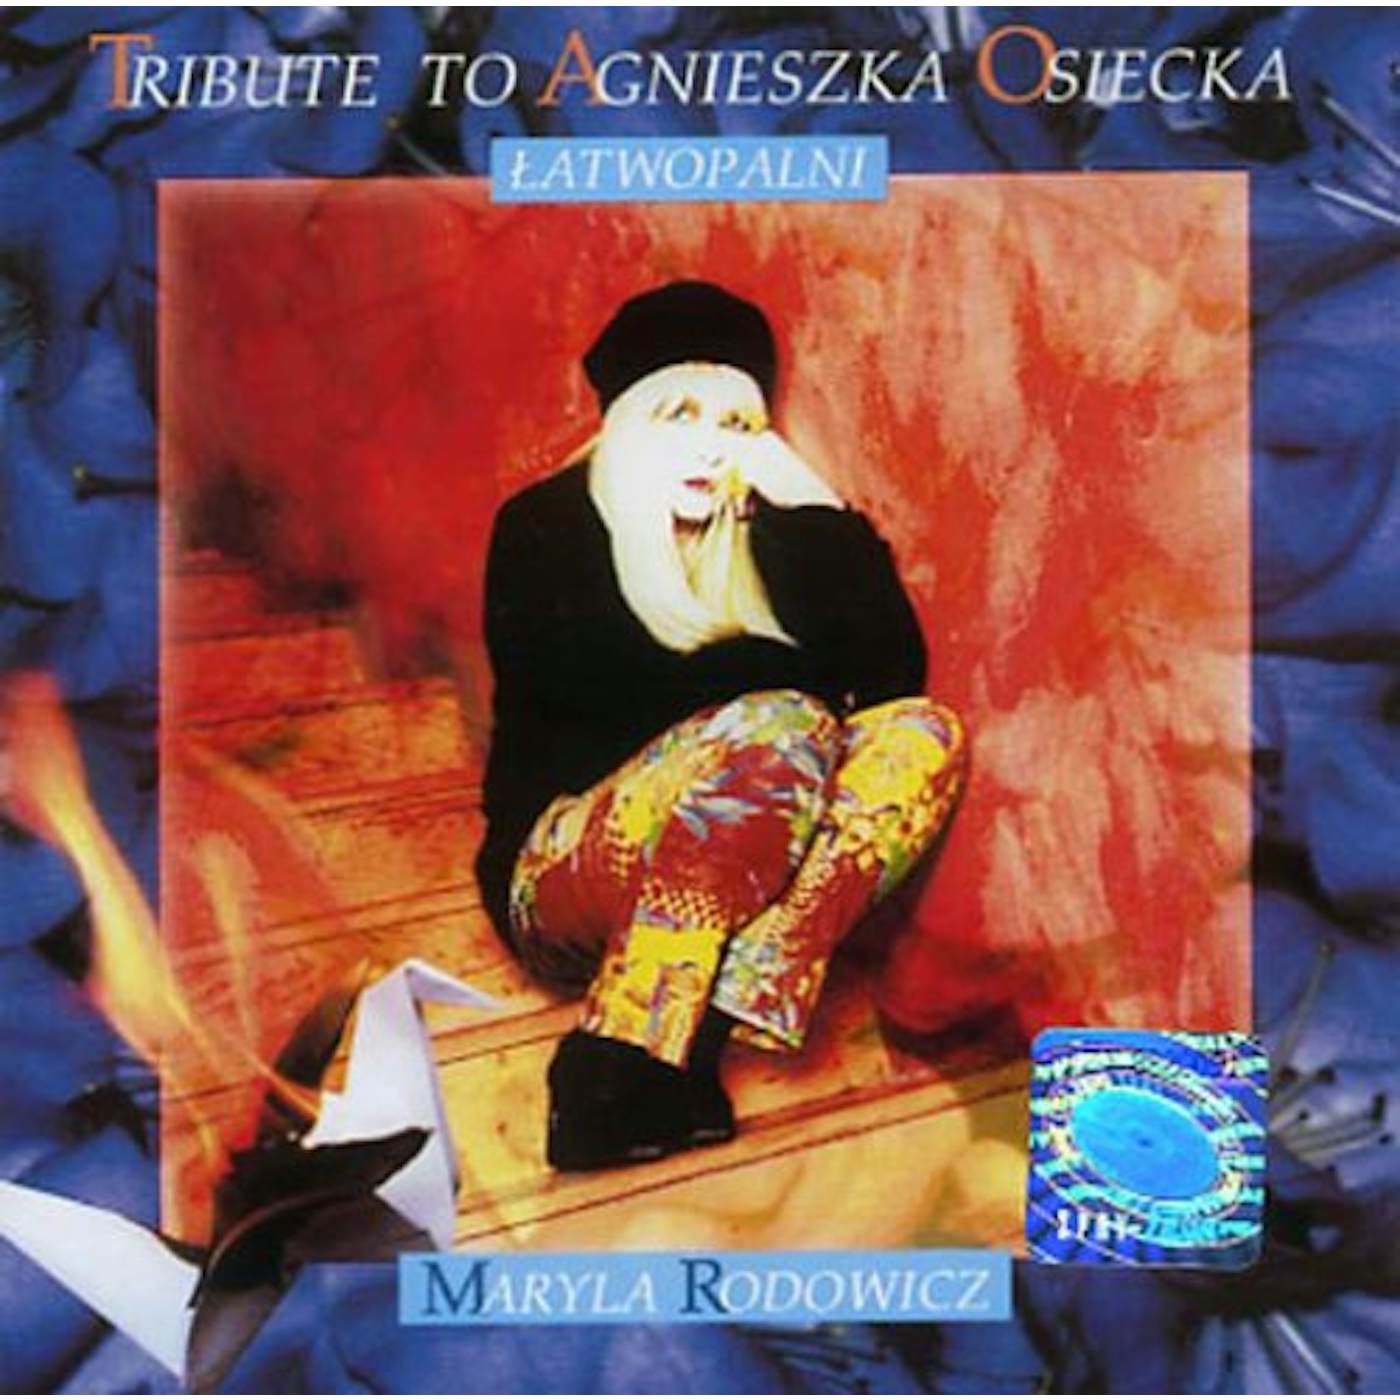 Maryla Rodowicz TRIBUTE TO AGNIESZKA OSIECKA CD